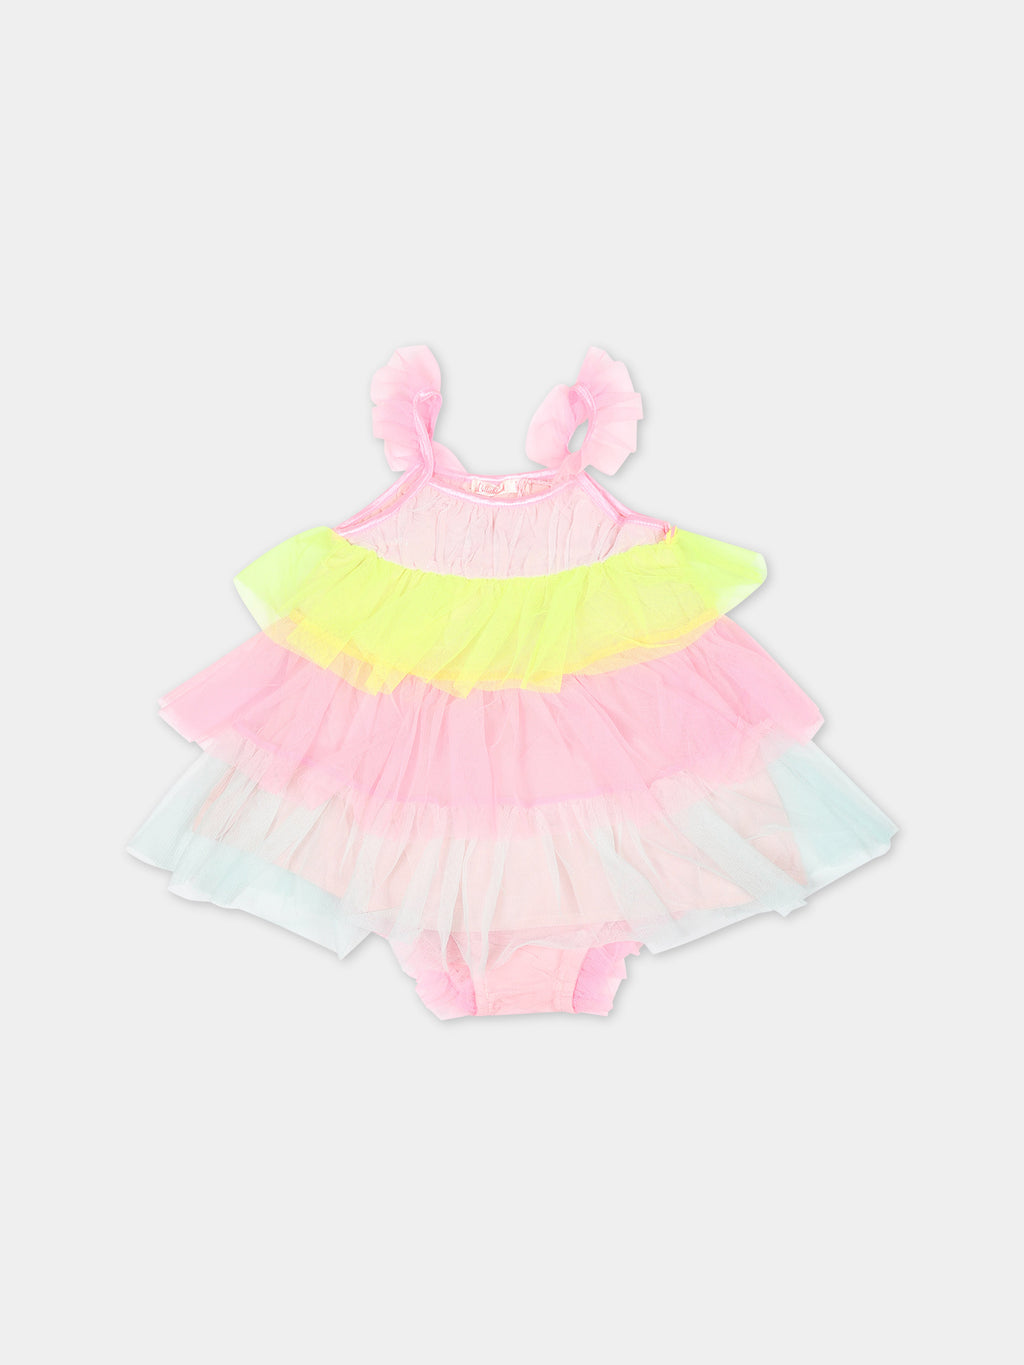 Multicolor elegant dress for baby girl